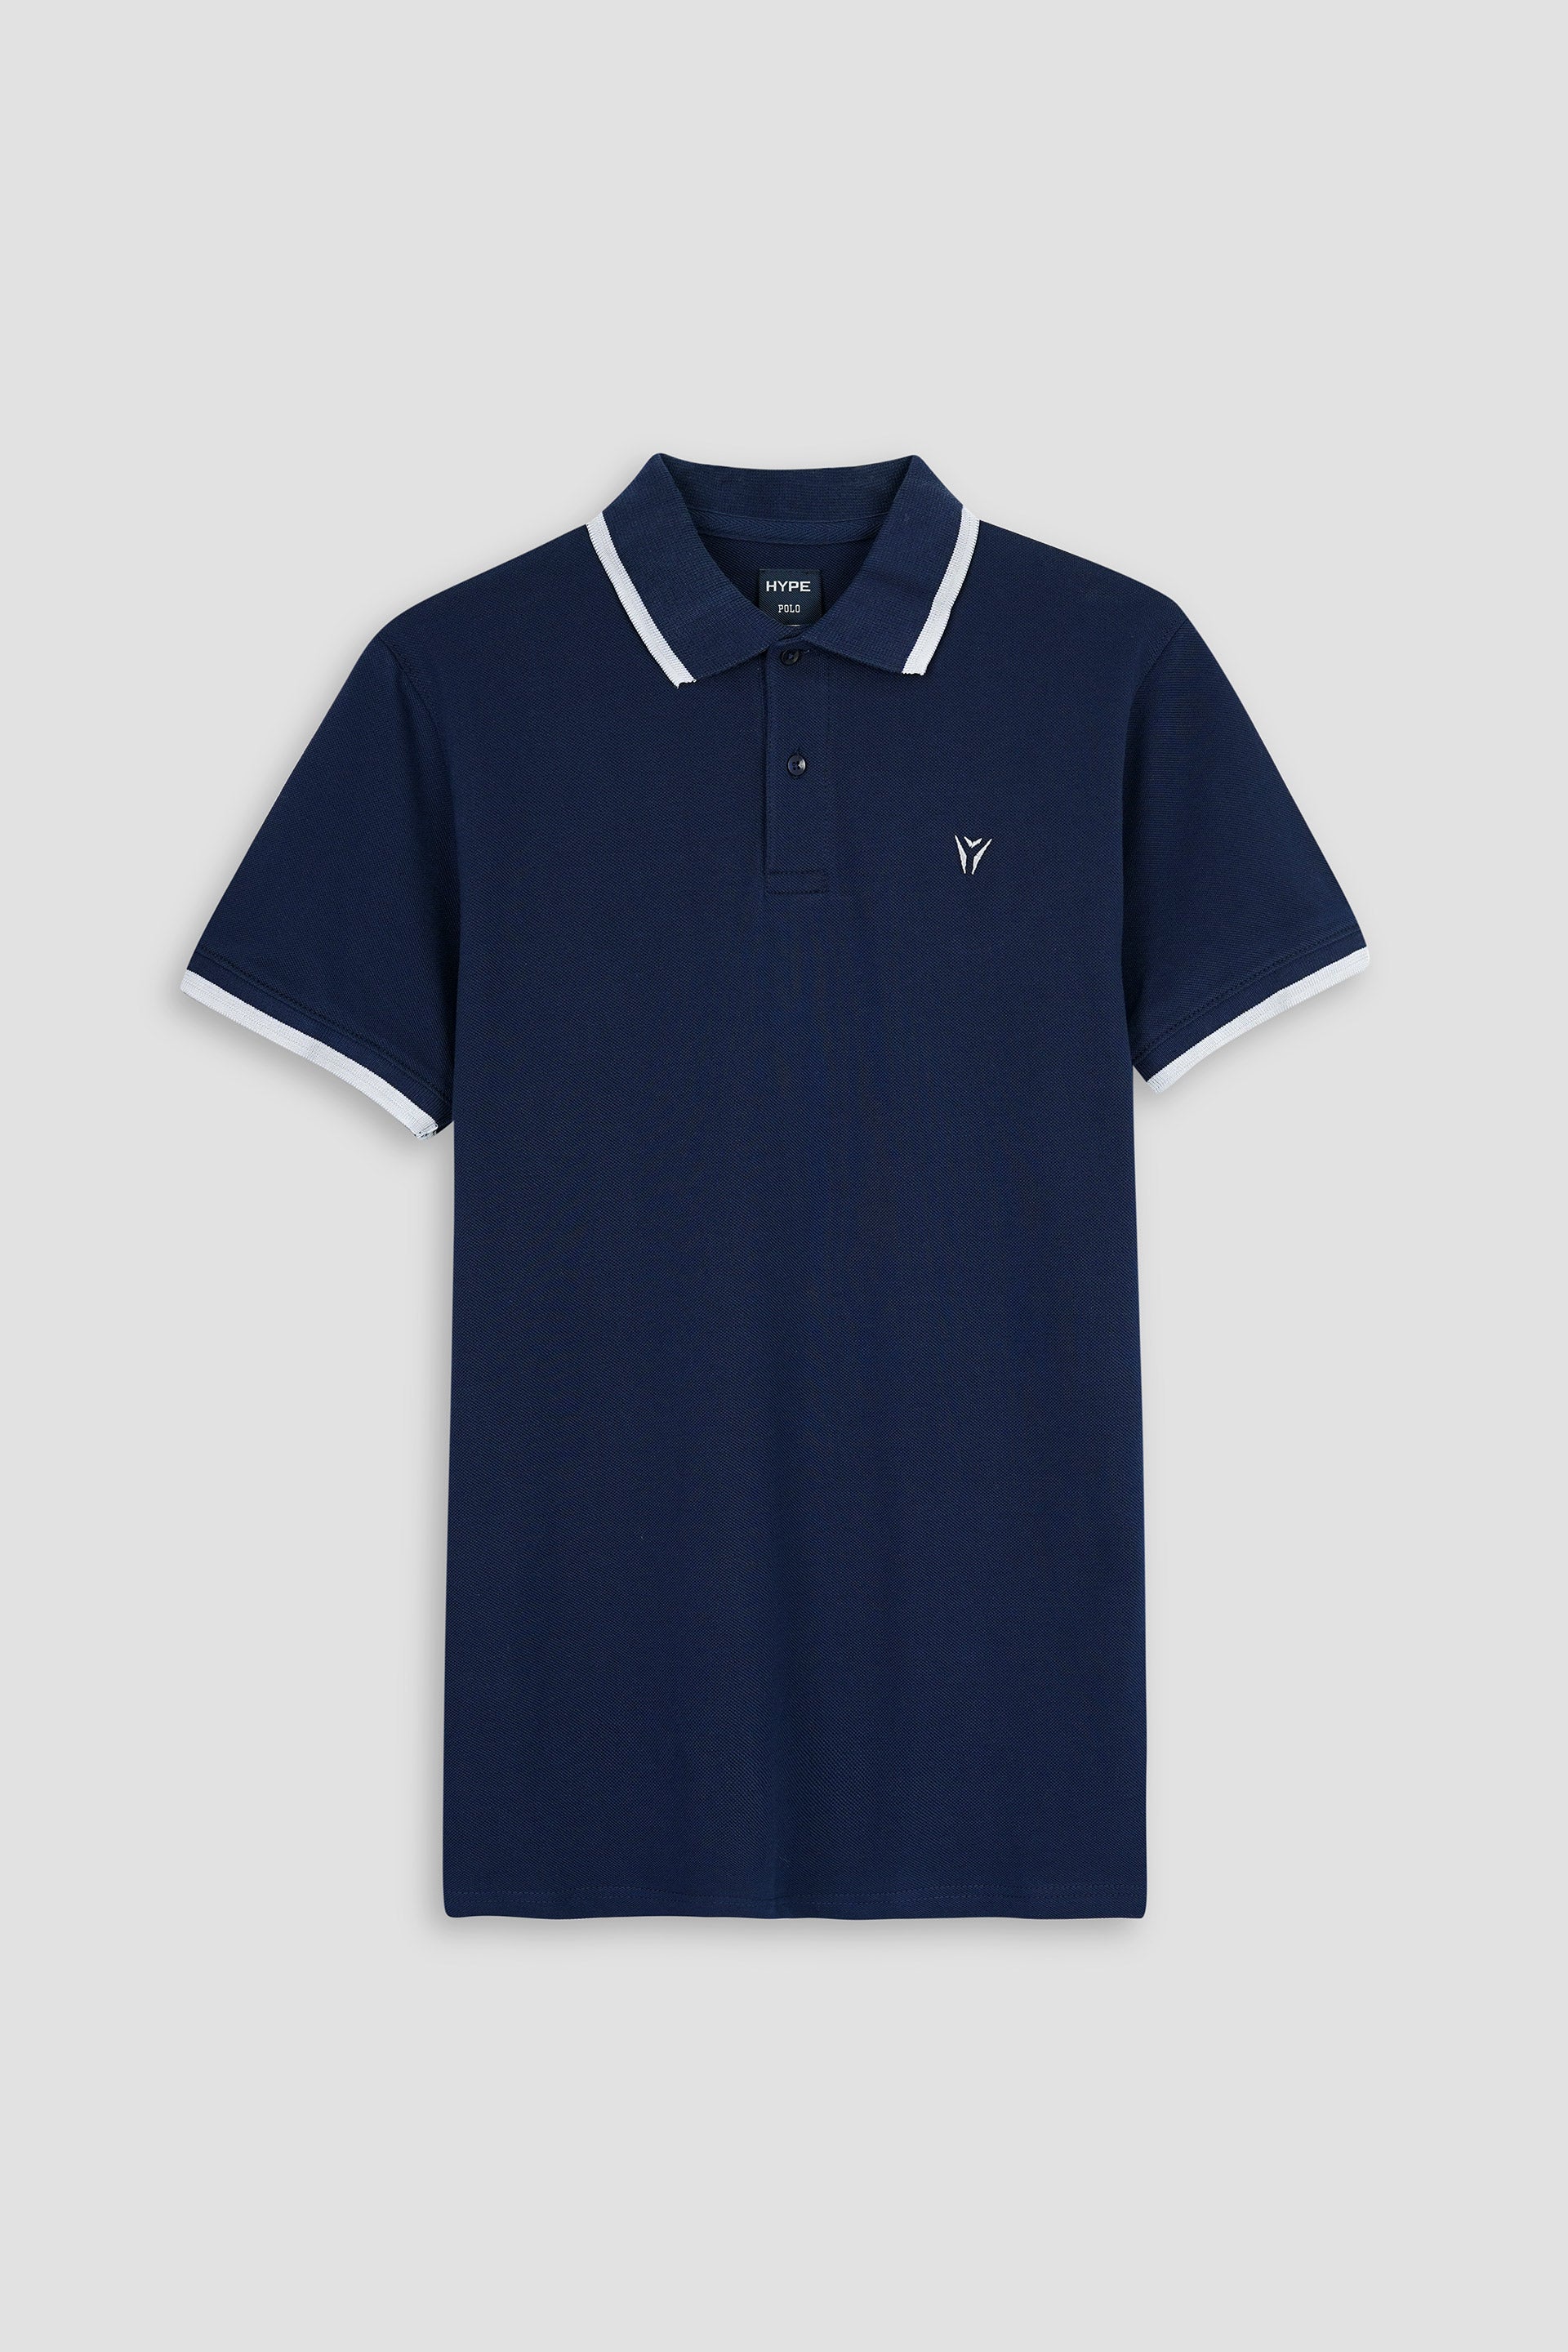 Embroidered Pique Navy Polo Shirt 002479